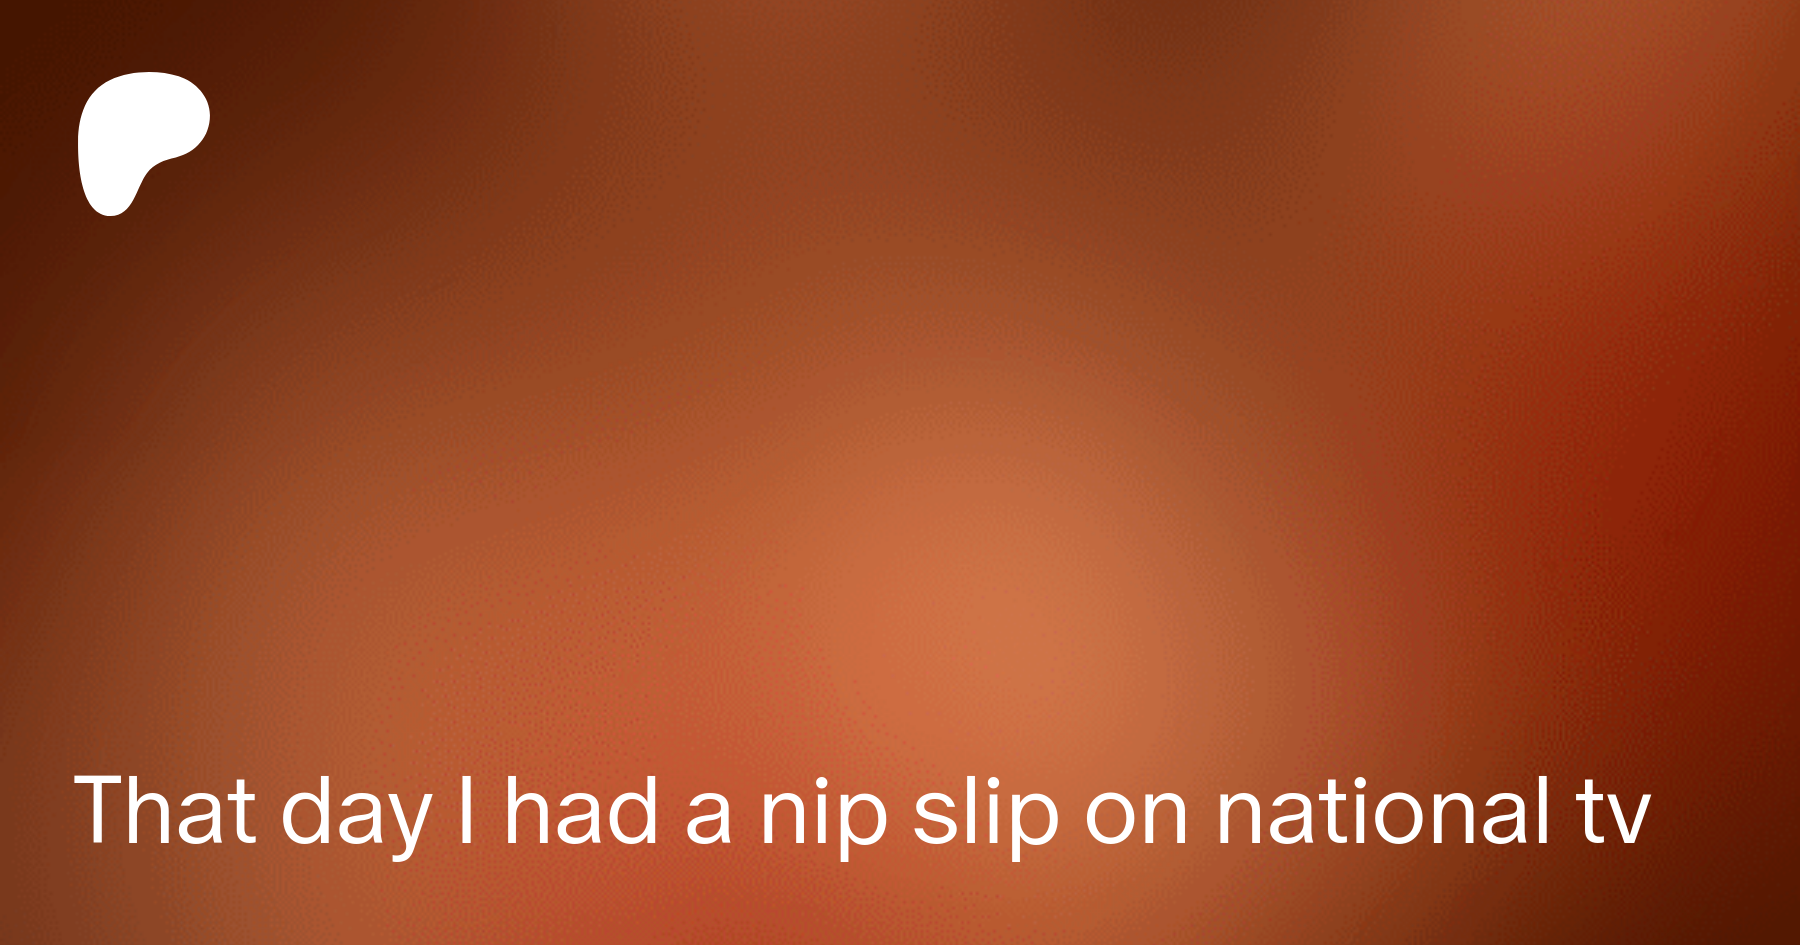 The nip slip 🤣💕